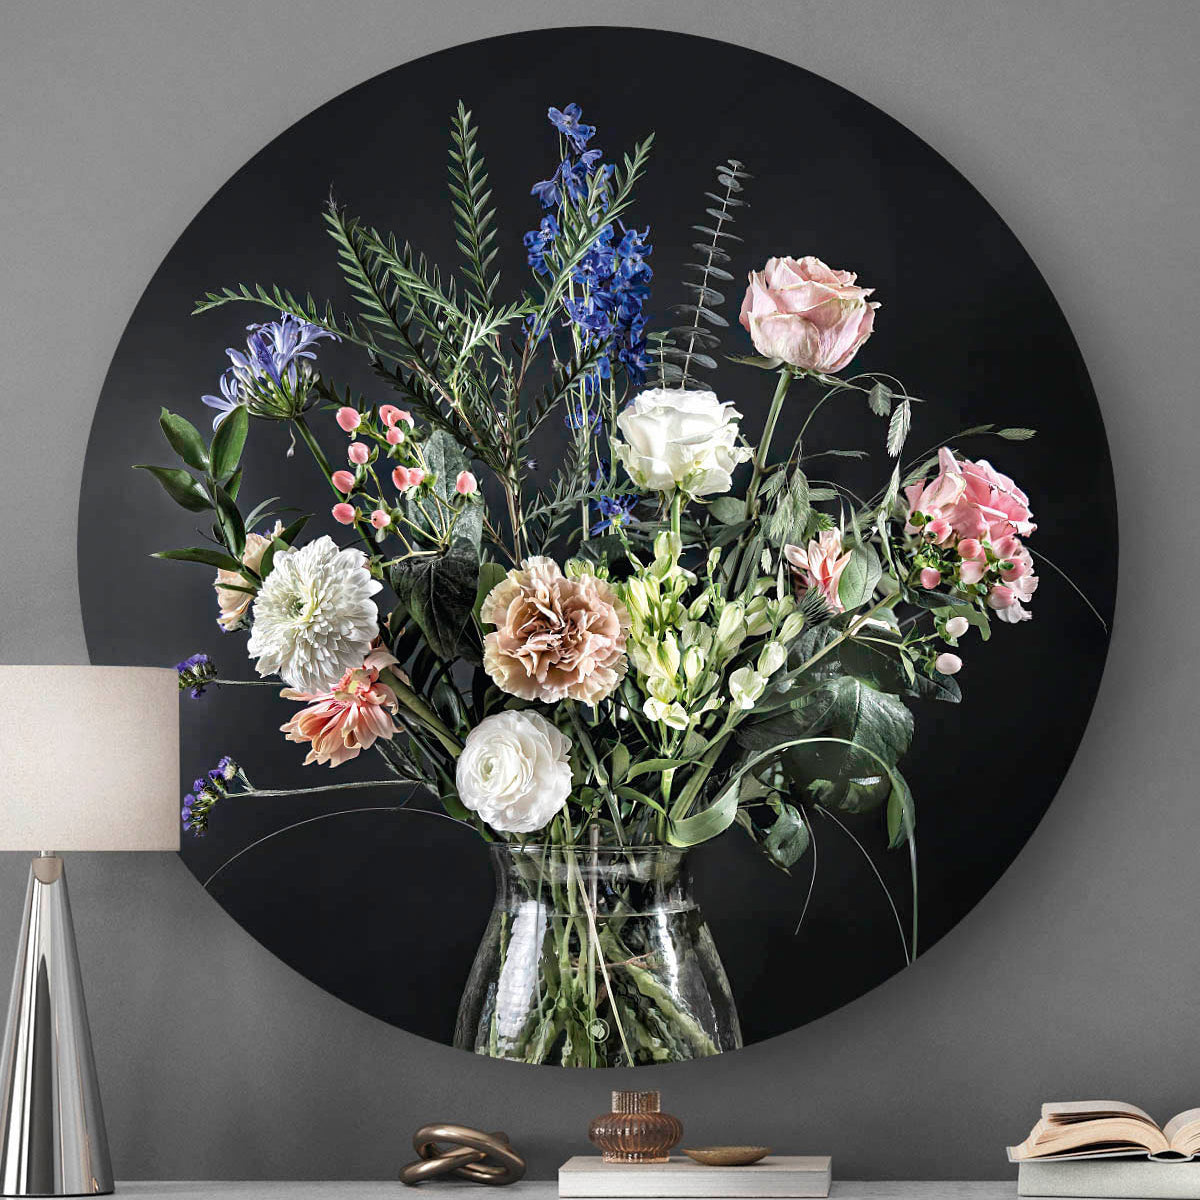 Voorzijde van wandcirkel met bloemen met zwarte achtergrond tegen een grijze muur